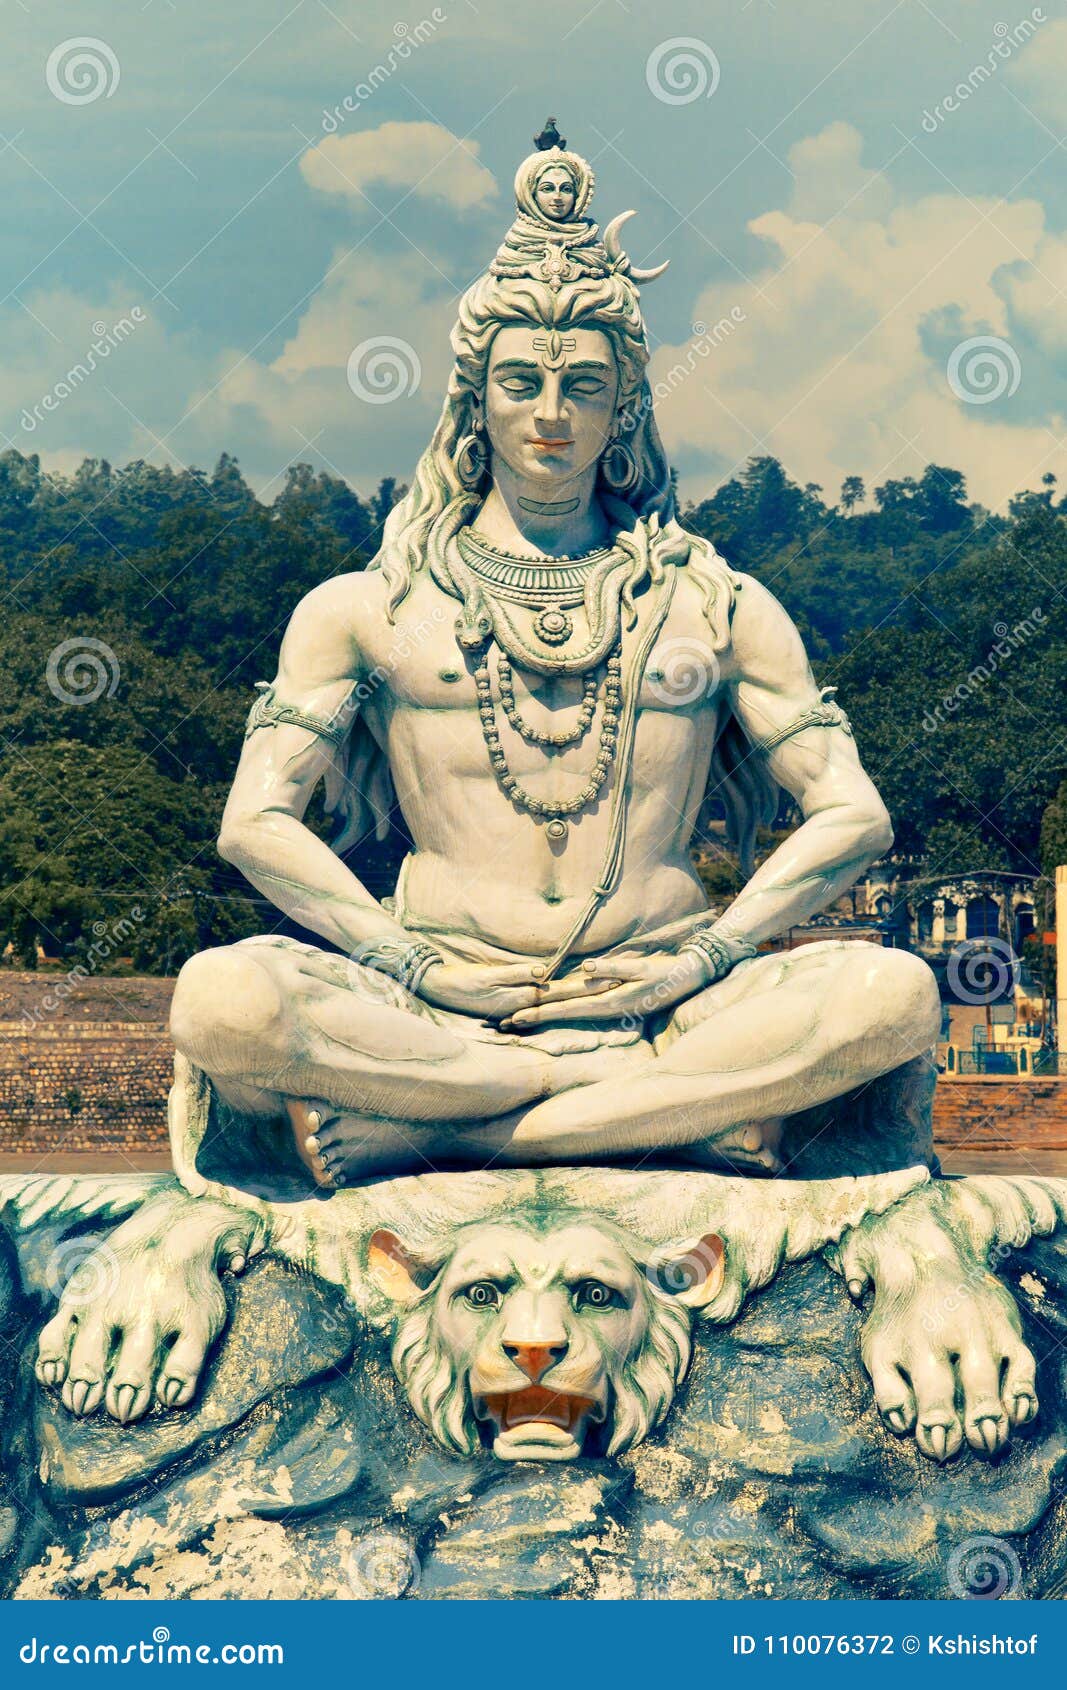 12,907 Lord Shiva Stock Photos - Free & Royalty-Free Stock Photos ...